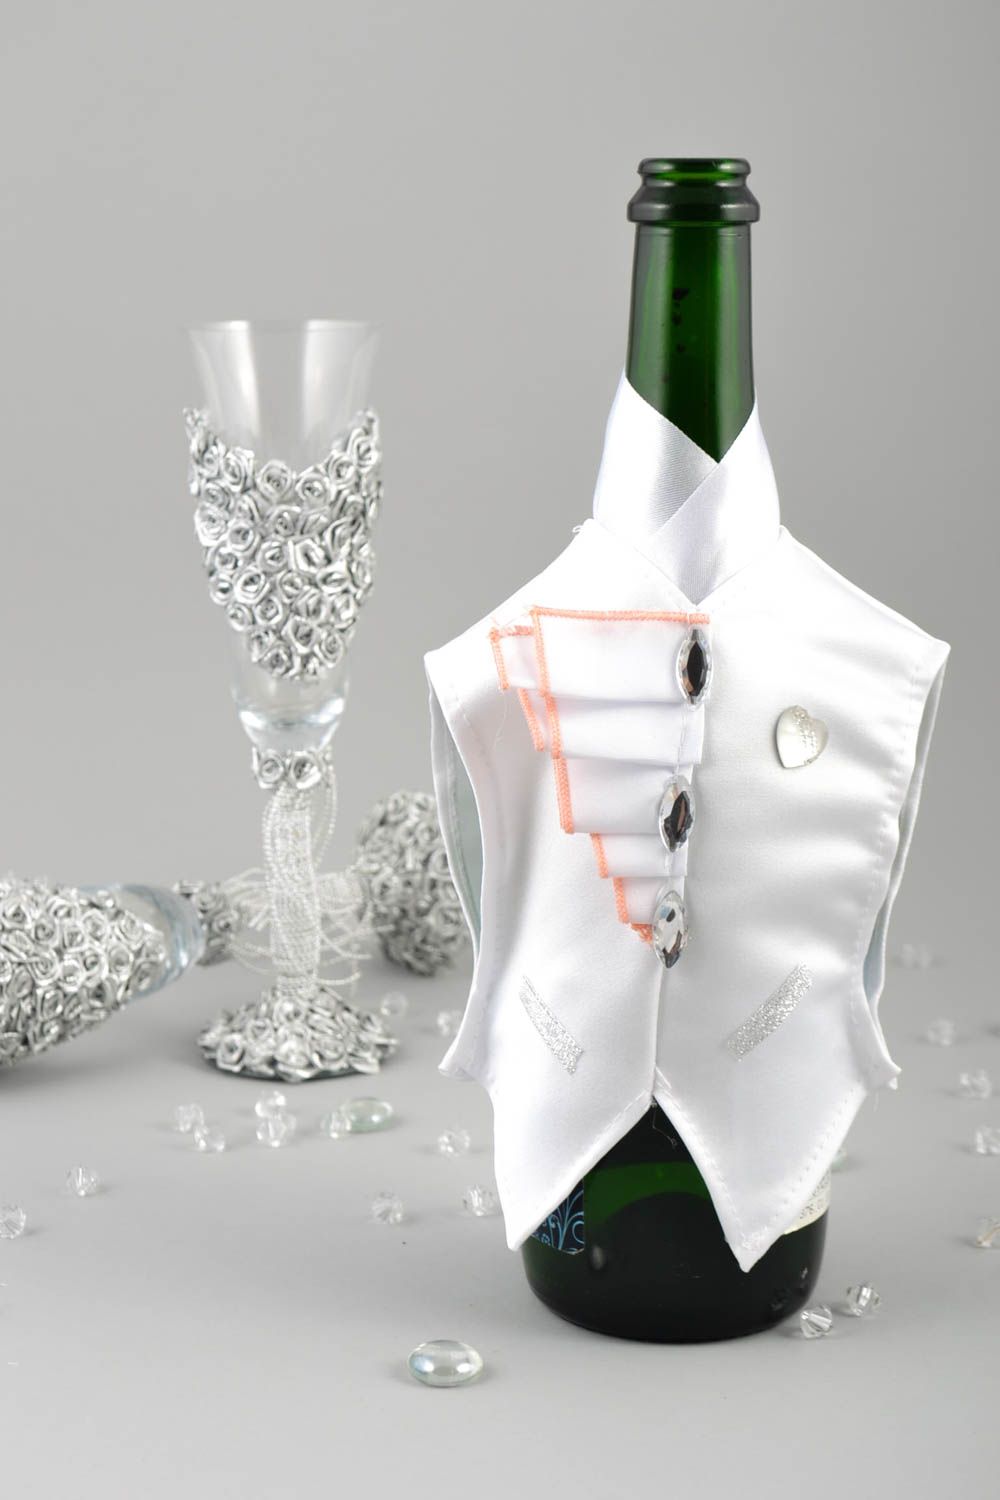 Deko Hochzeitstisch handmade Deko für Flaschen kreative festliche Deko Ideen foto 1